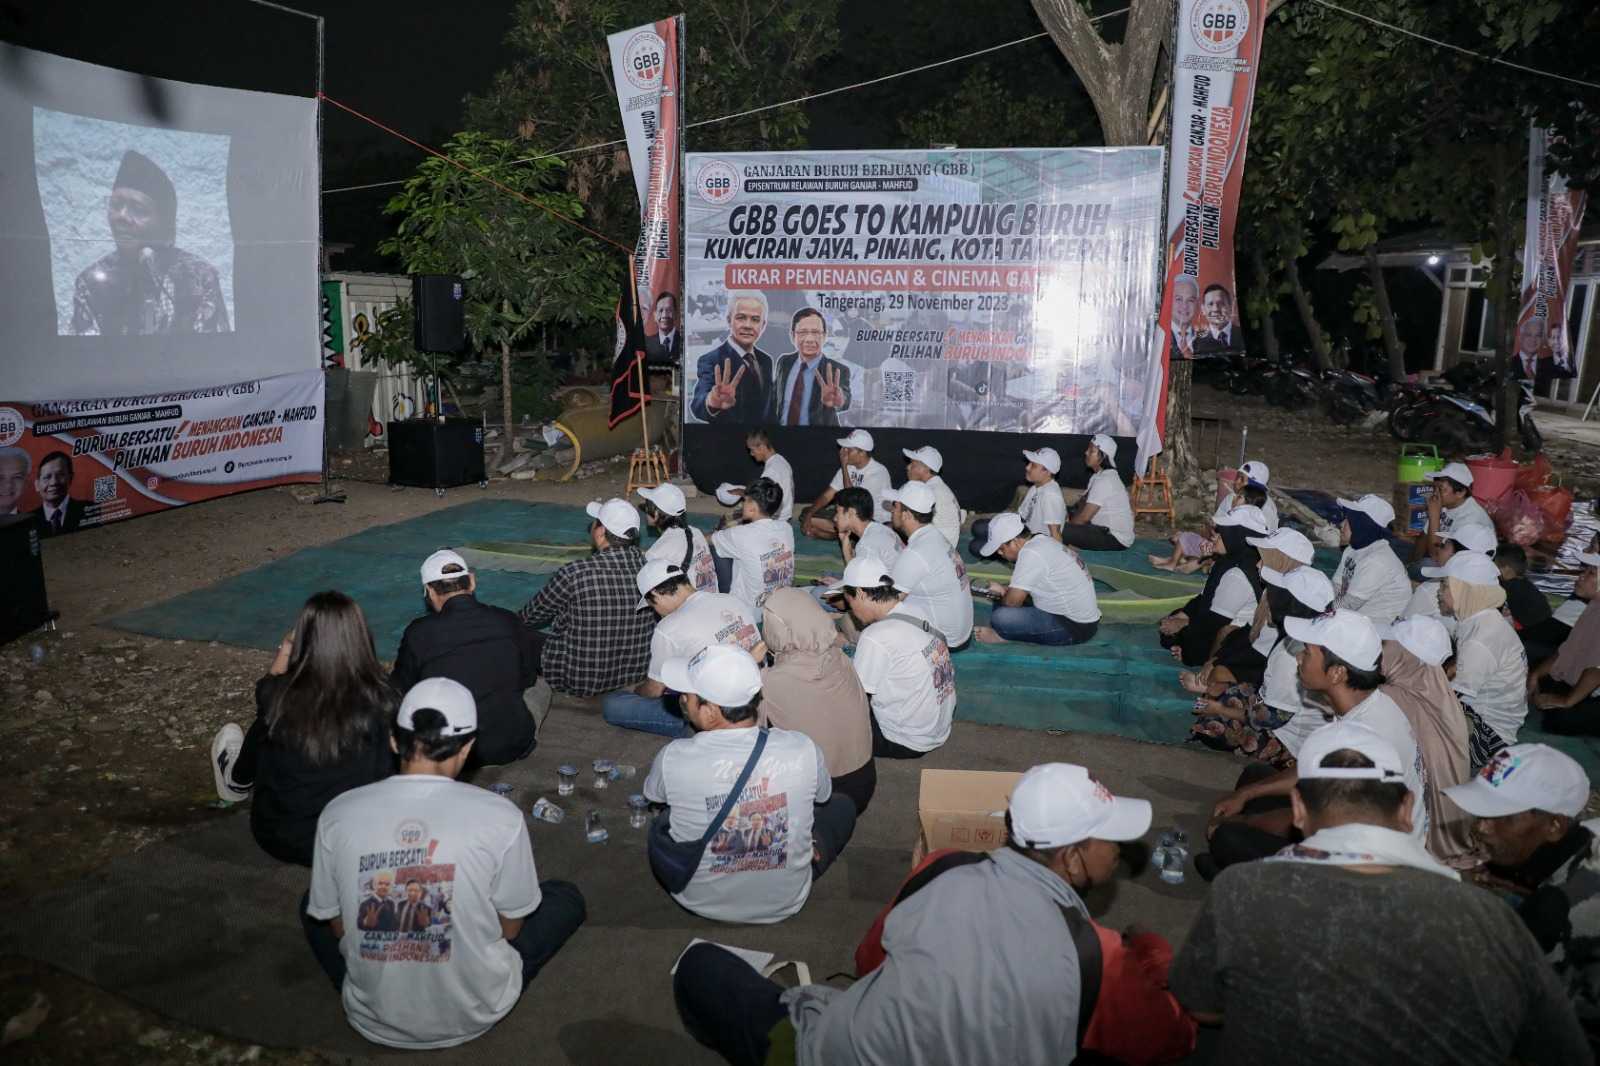 Kunjungi Perkampungan Buruh di Tangerang, GBB Kenalkan Ganjar-Mahfud Lewat Layar Tancap